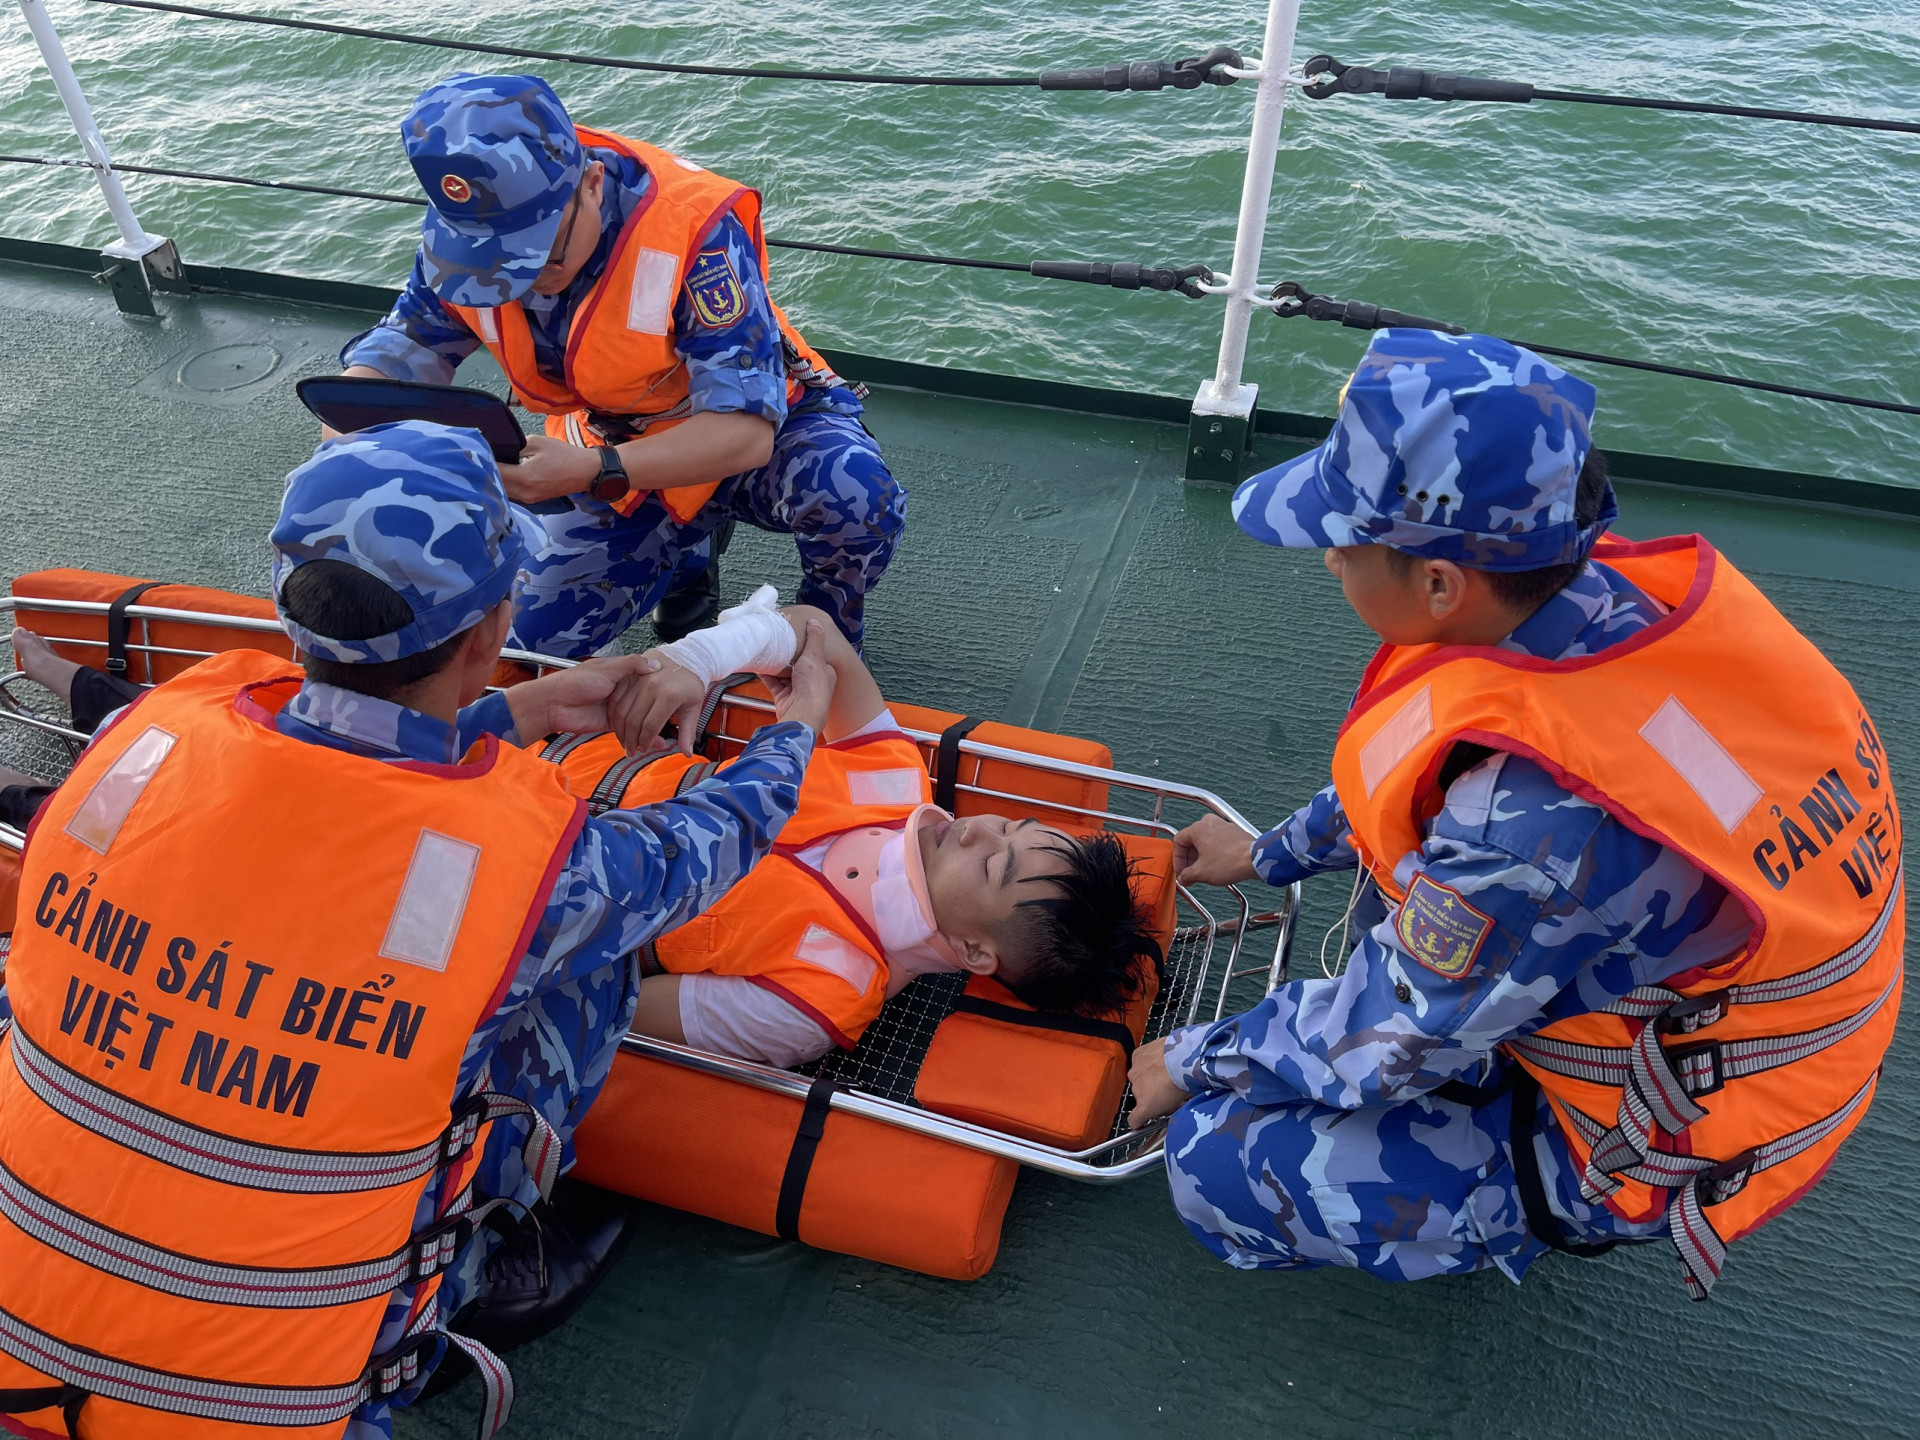 Cán bộ, chiến sĩ luyện tập phương án cứu hộ cứu nạn trên biển.